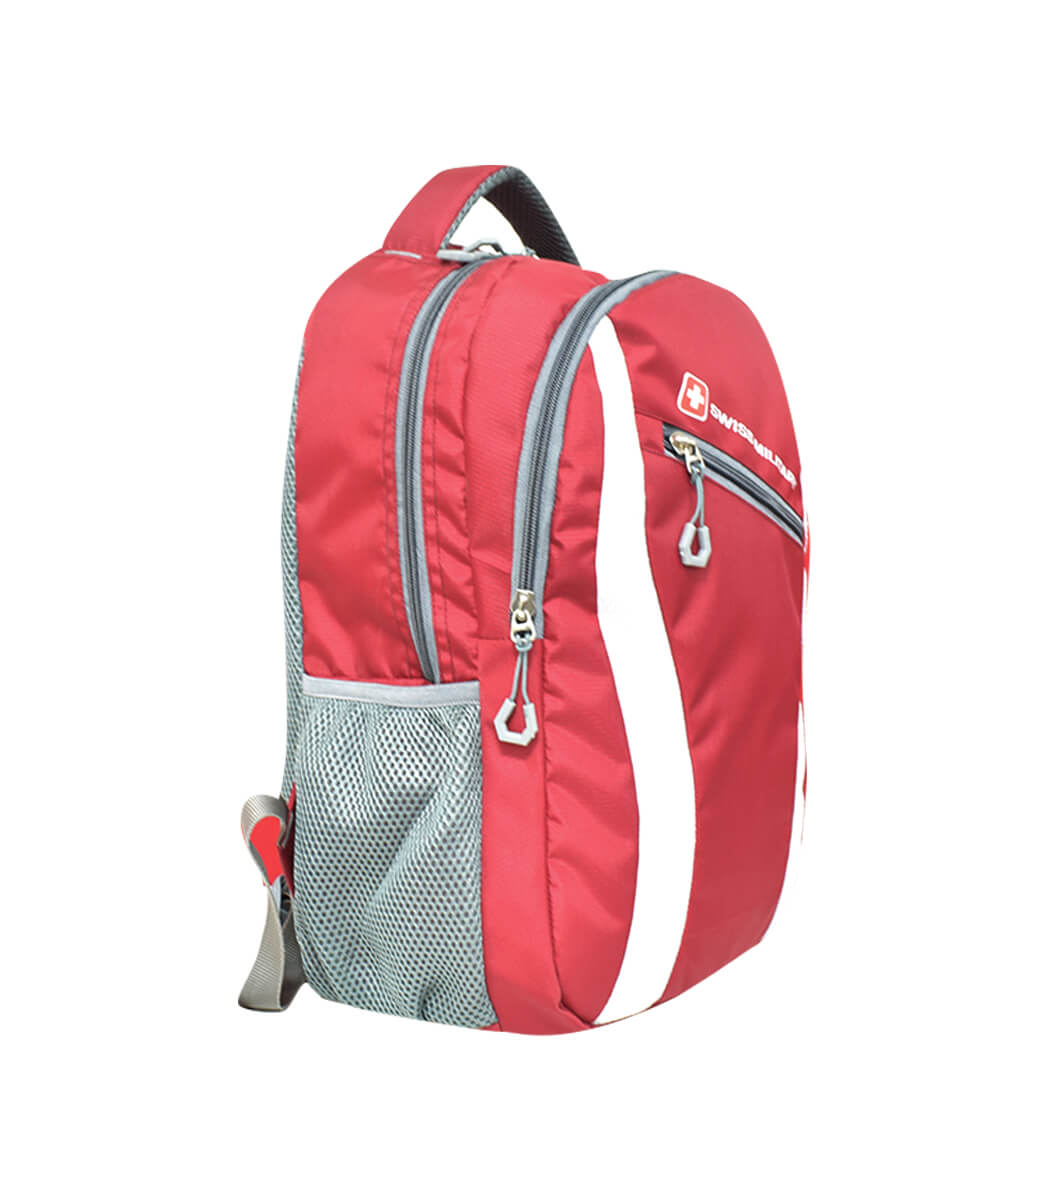 LBP86 – Laptop Backpack